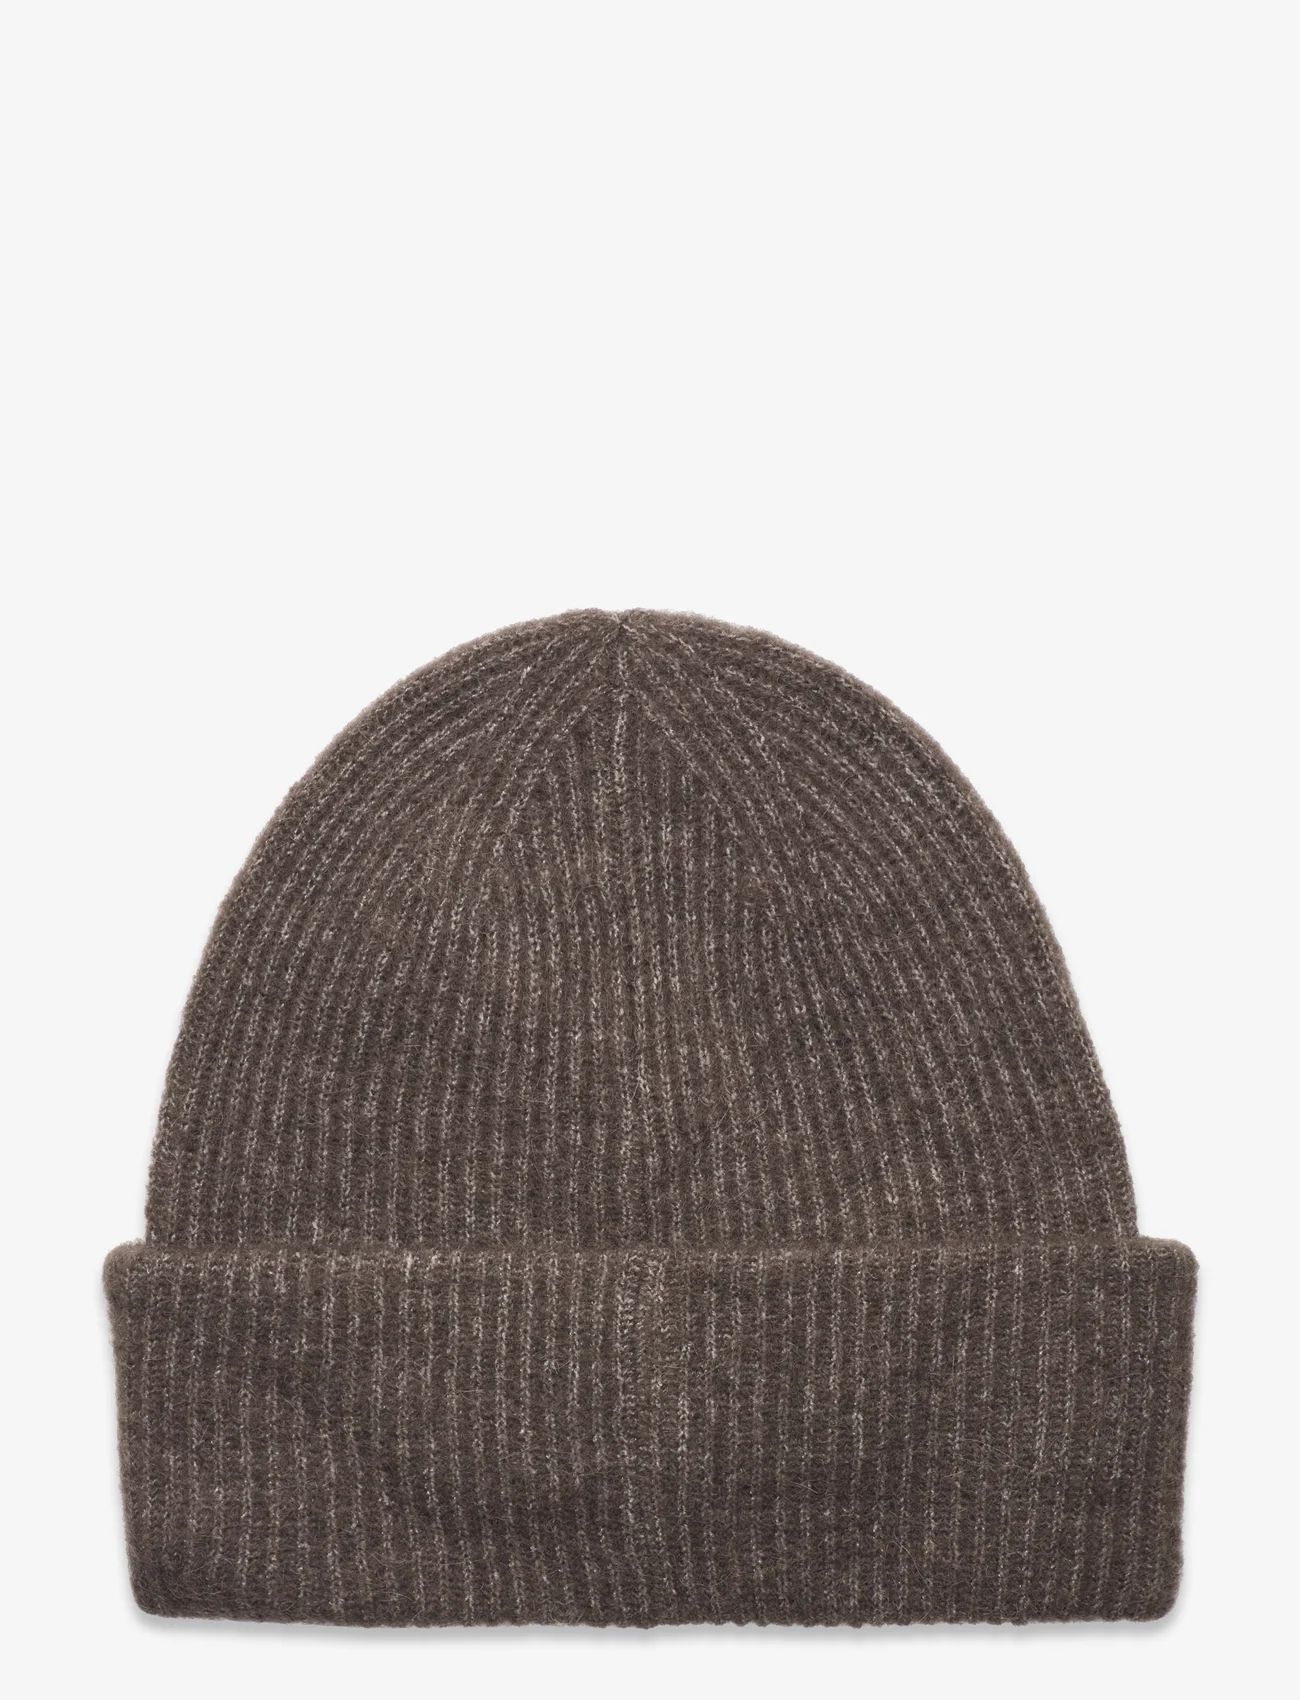 Samsøe Samsøe - Nor hat 7355 - huer - major brown - 1